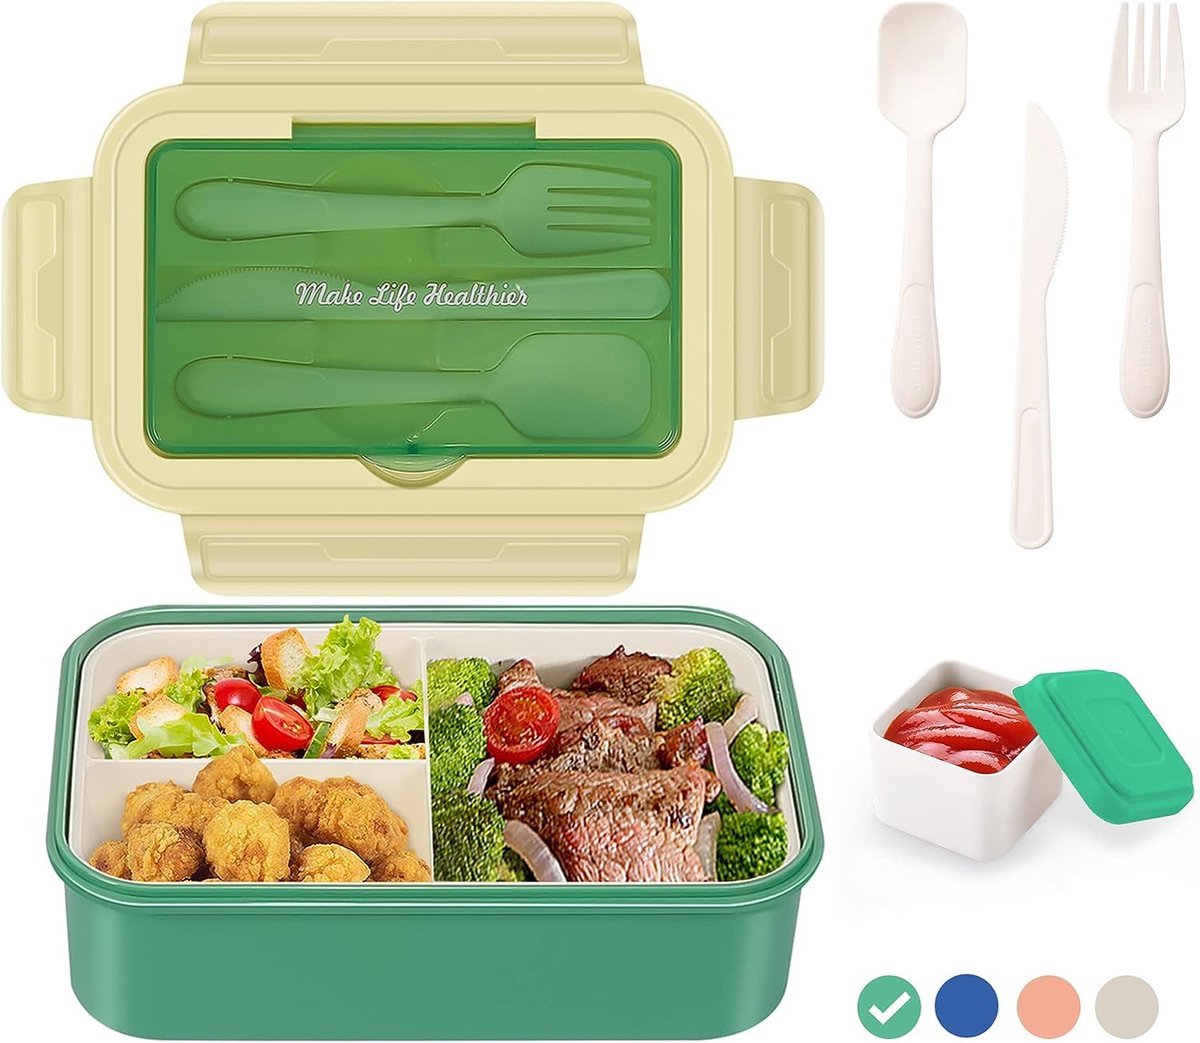 Lunchbox met 3 vakken - Groen - 1400 ml - Broodtrommel met bestek en extra bakje - Snackbox voor school, werk, picknick - Magnetron/vaatwasserbestendig